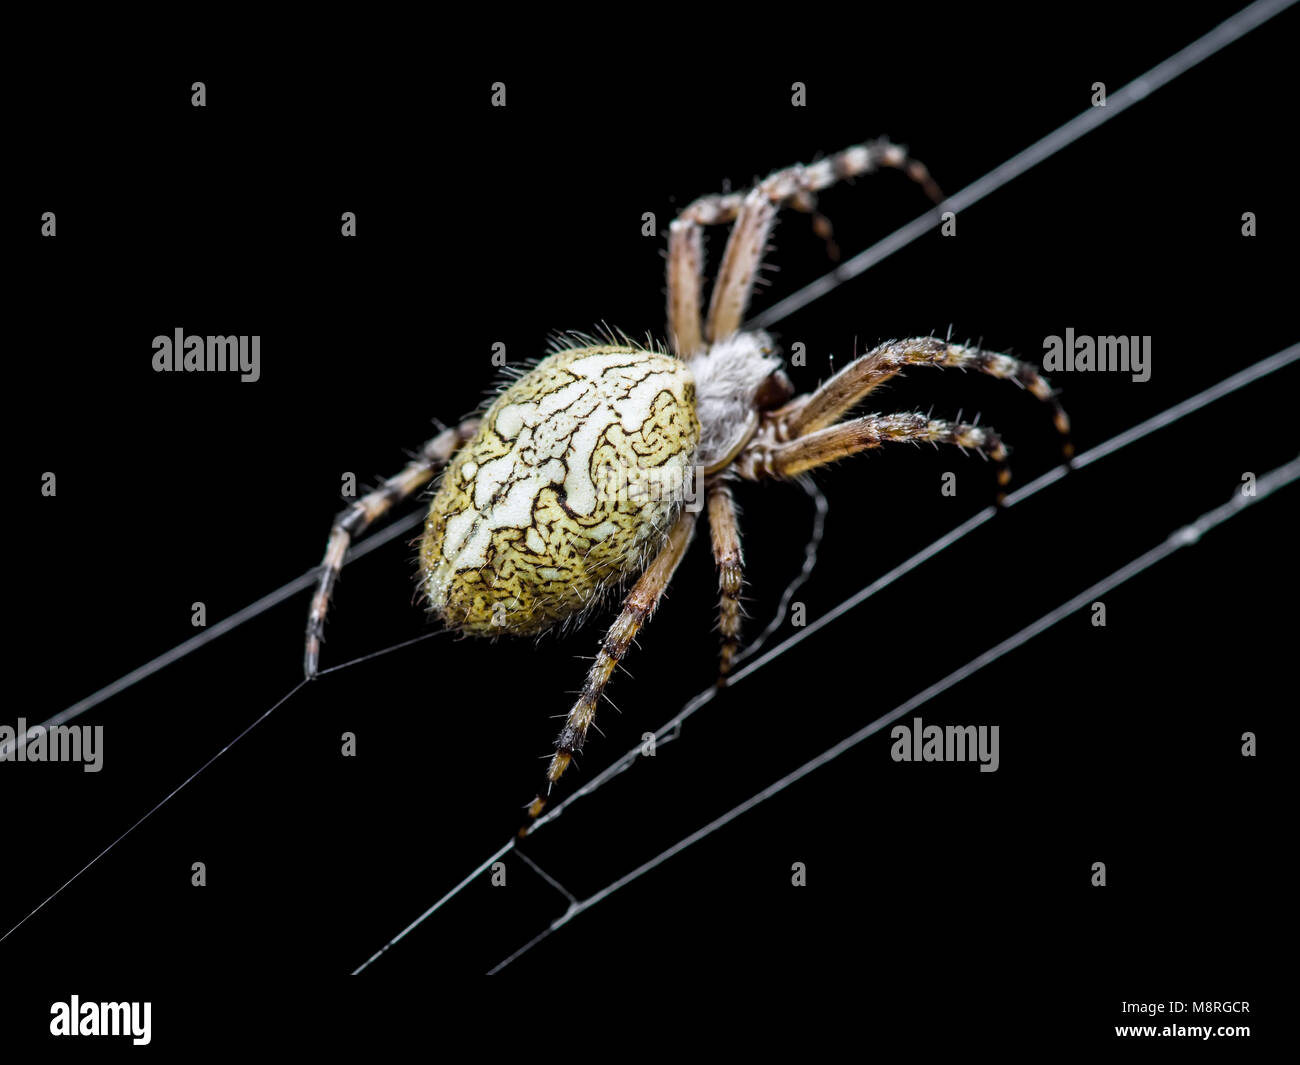 Spider Web Trap on Dark Background Stock Photo